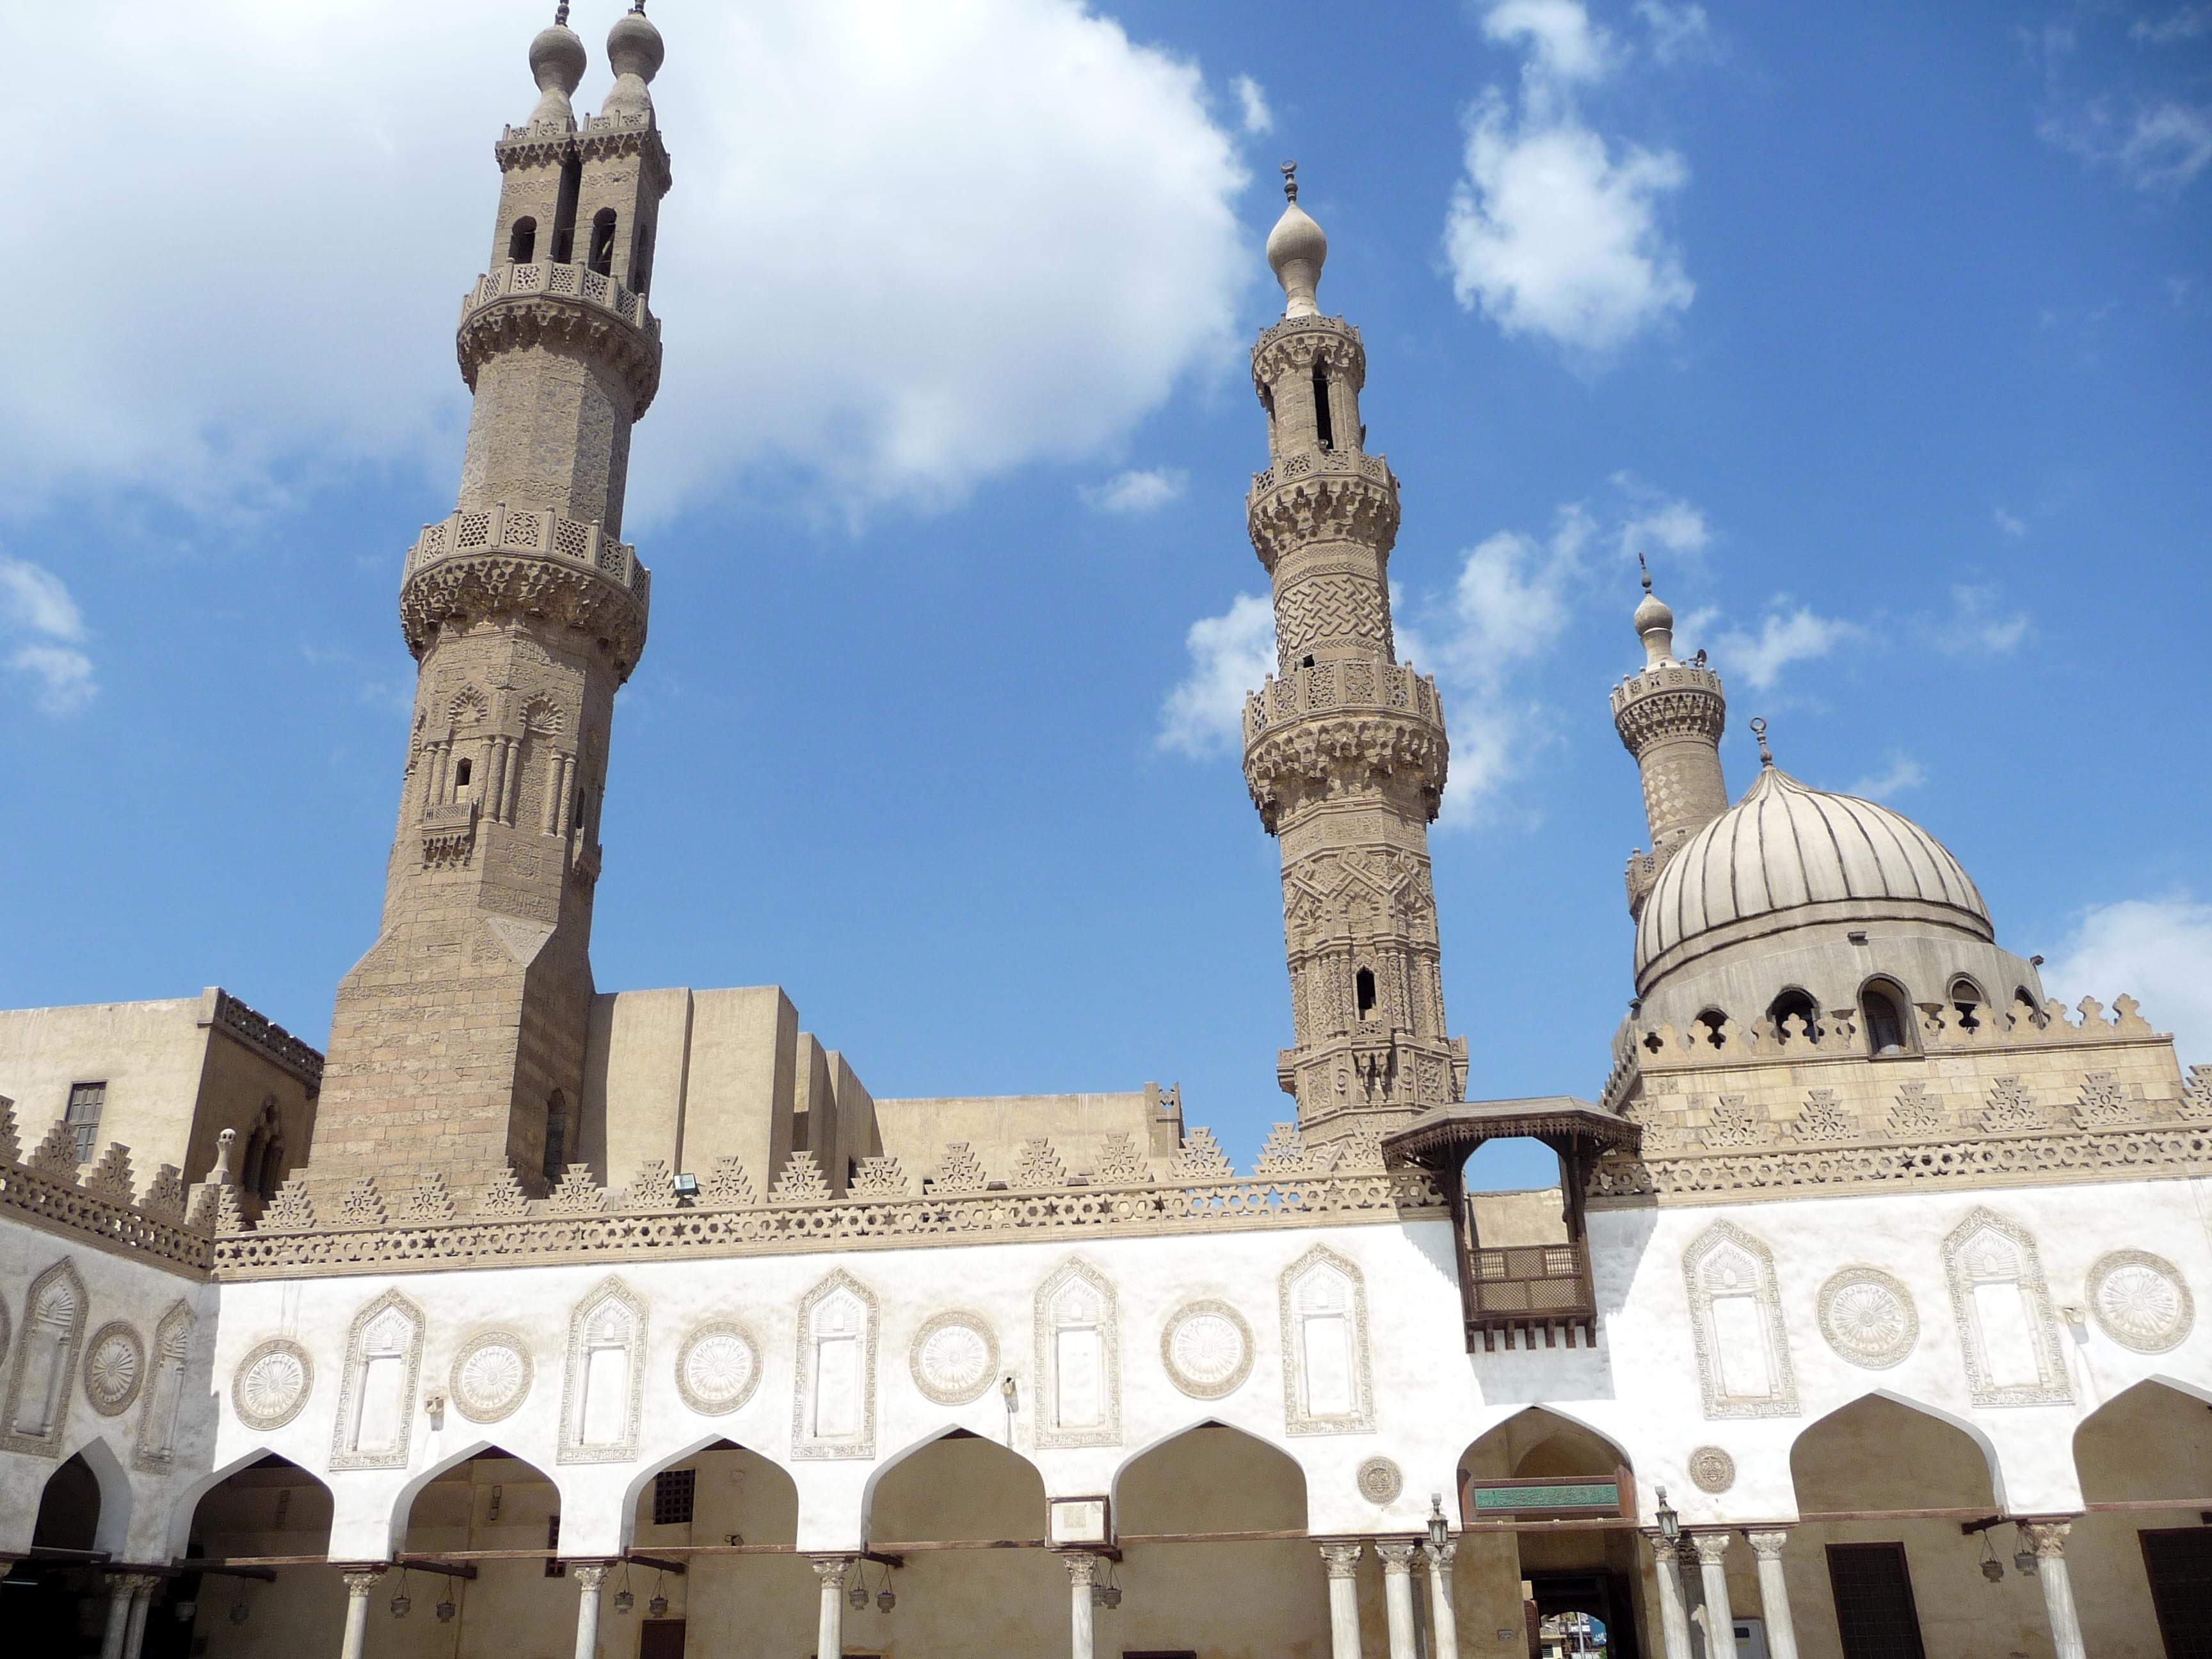 Minarets